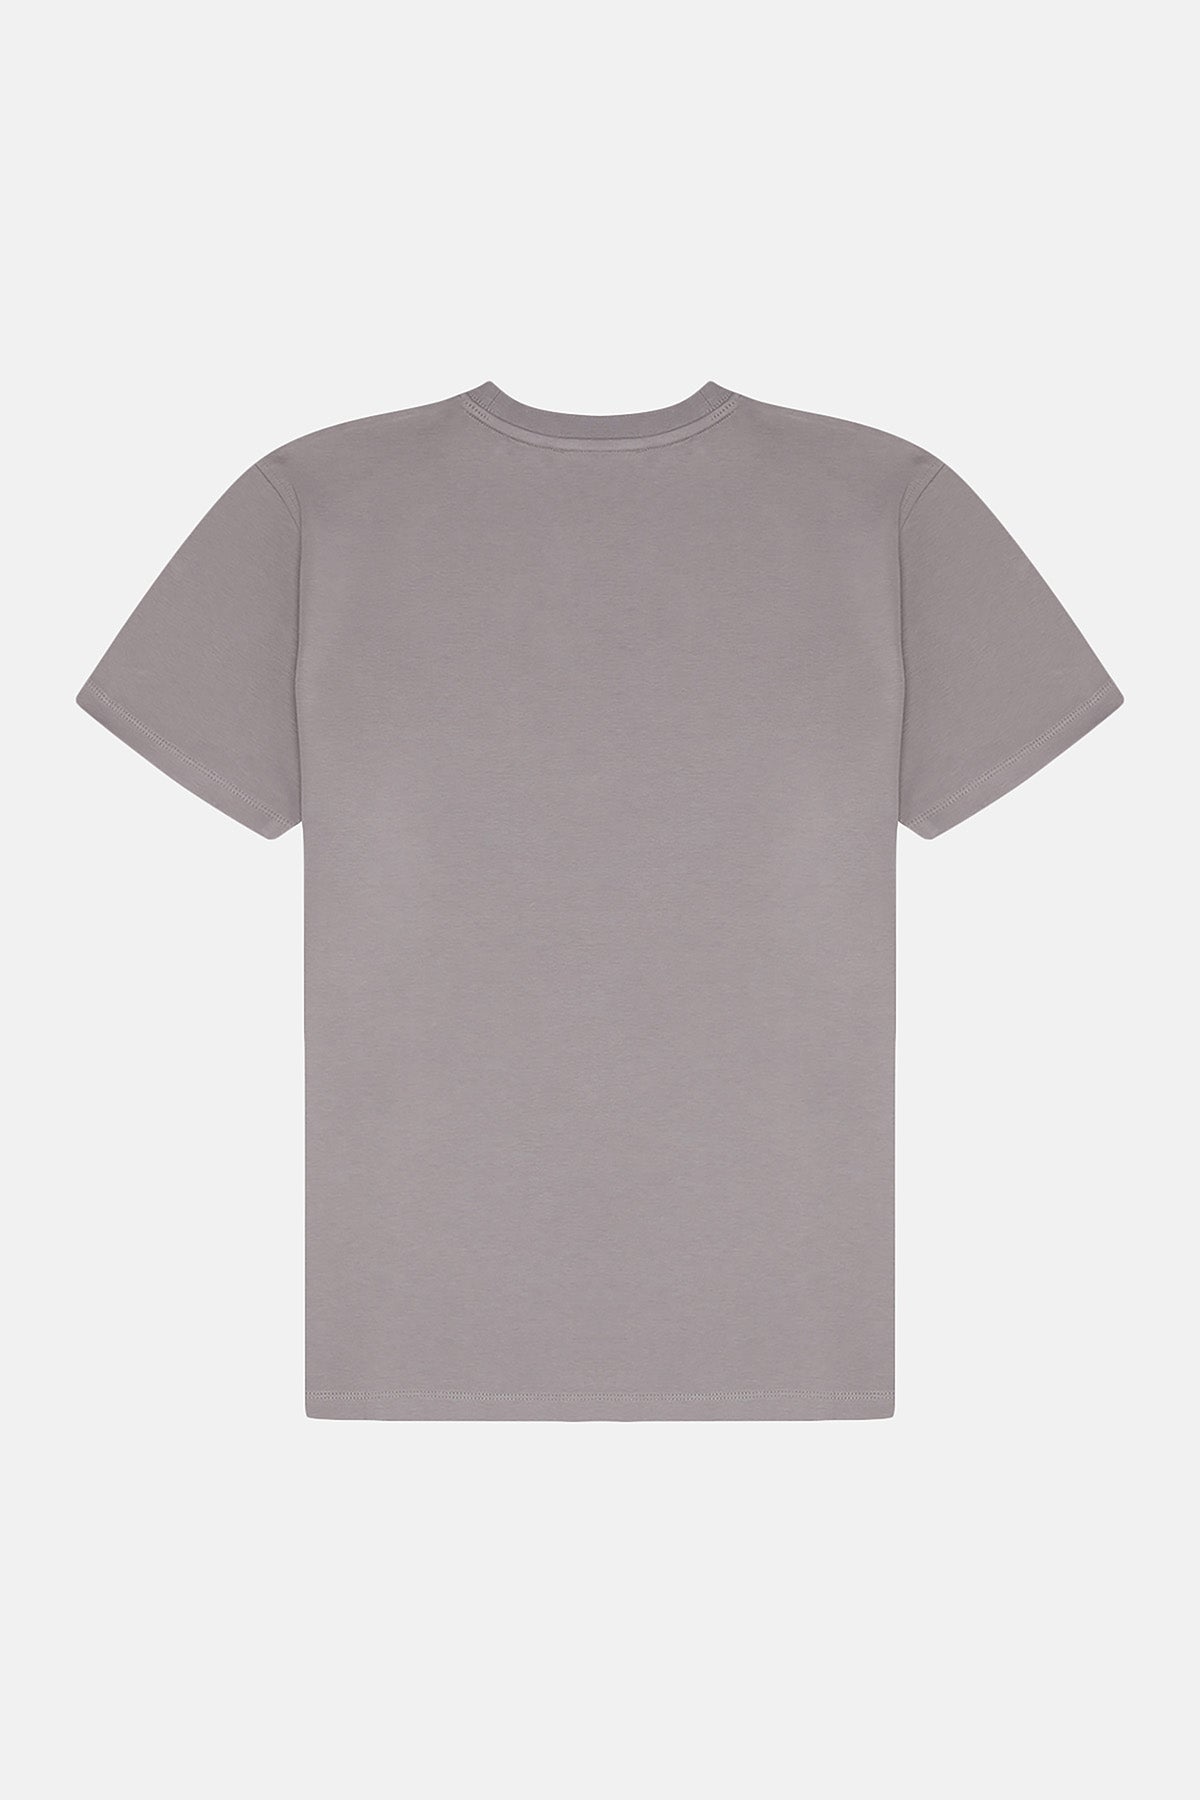 Socrates Logo Premium T-Shirt - Gri